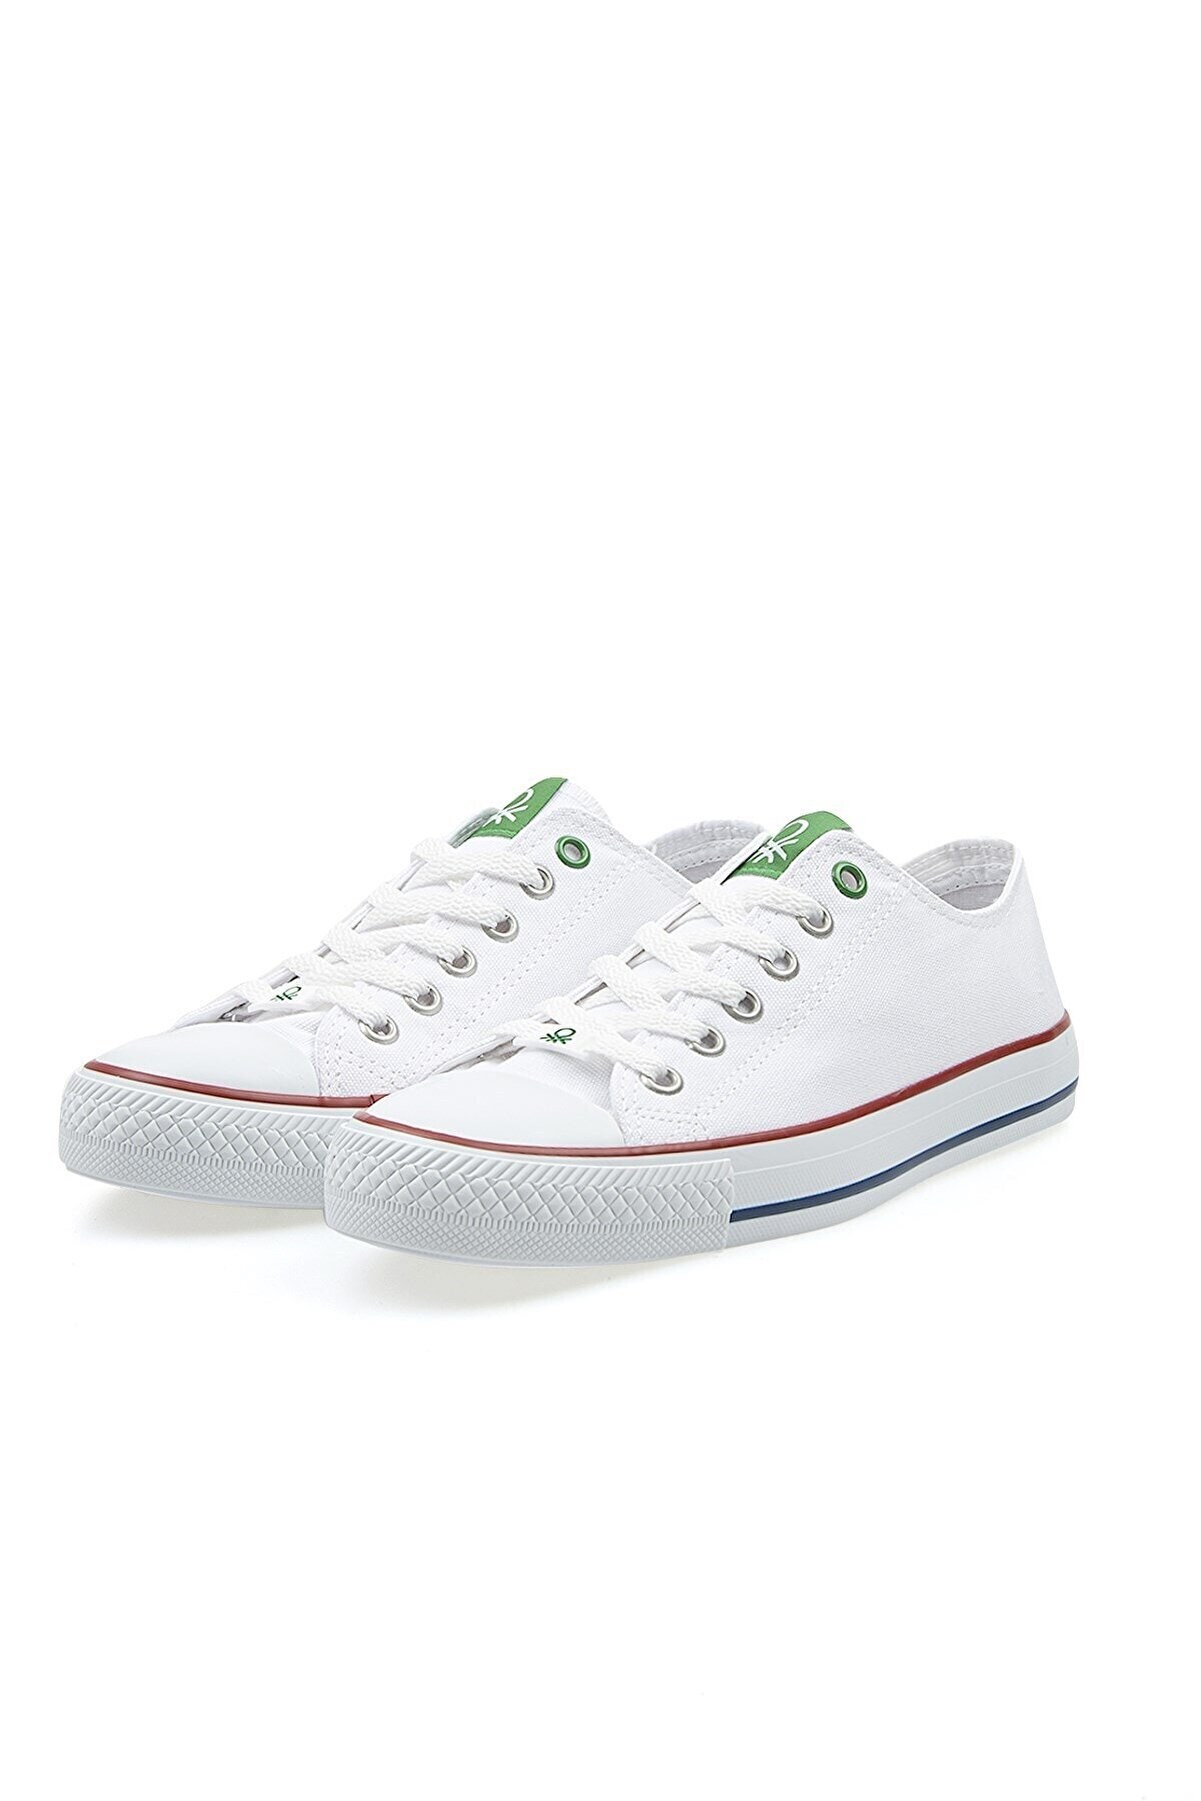 Benetton Kadın Ayakkabı BN-30196 19-Beyaz